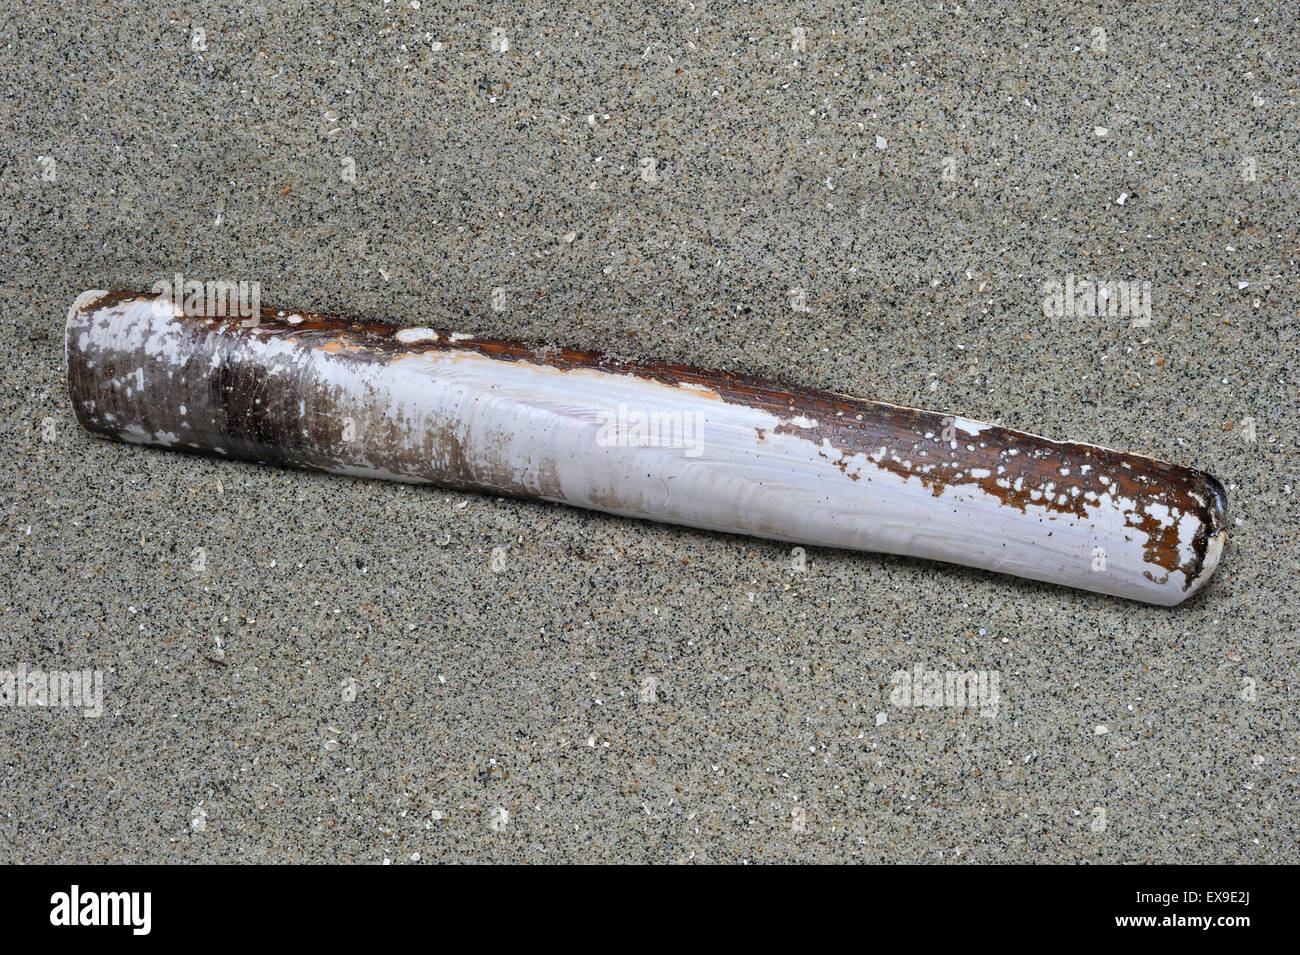 Pod gestochen Schale / gemeinsame Razorfish (Ensis Siliqua) am Strand entlang der Nordseeküste Stockfoto